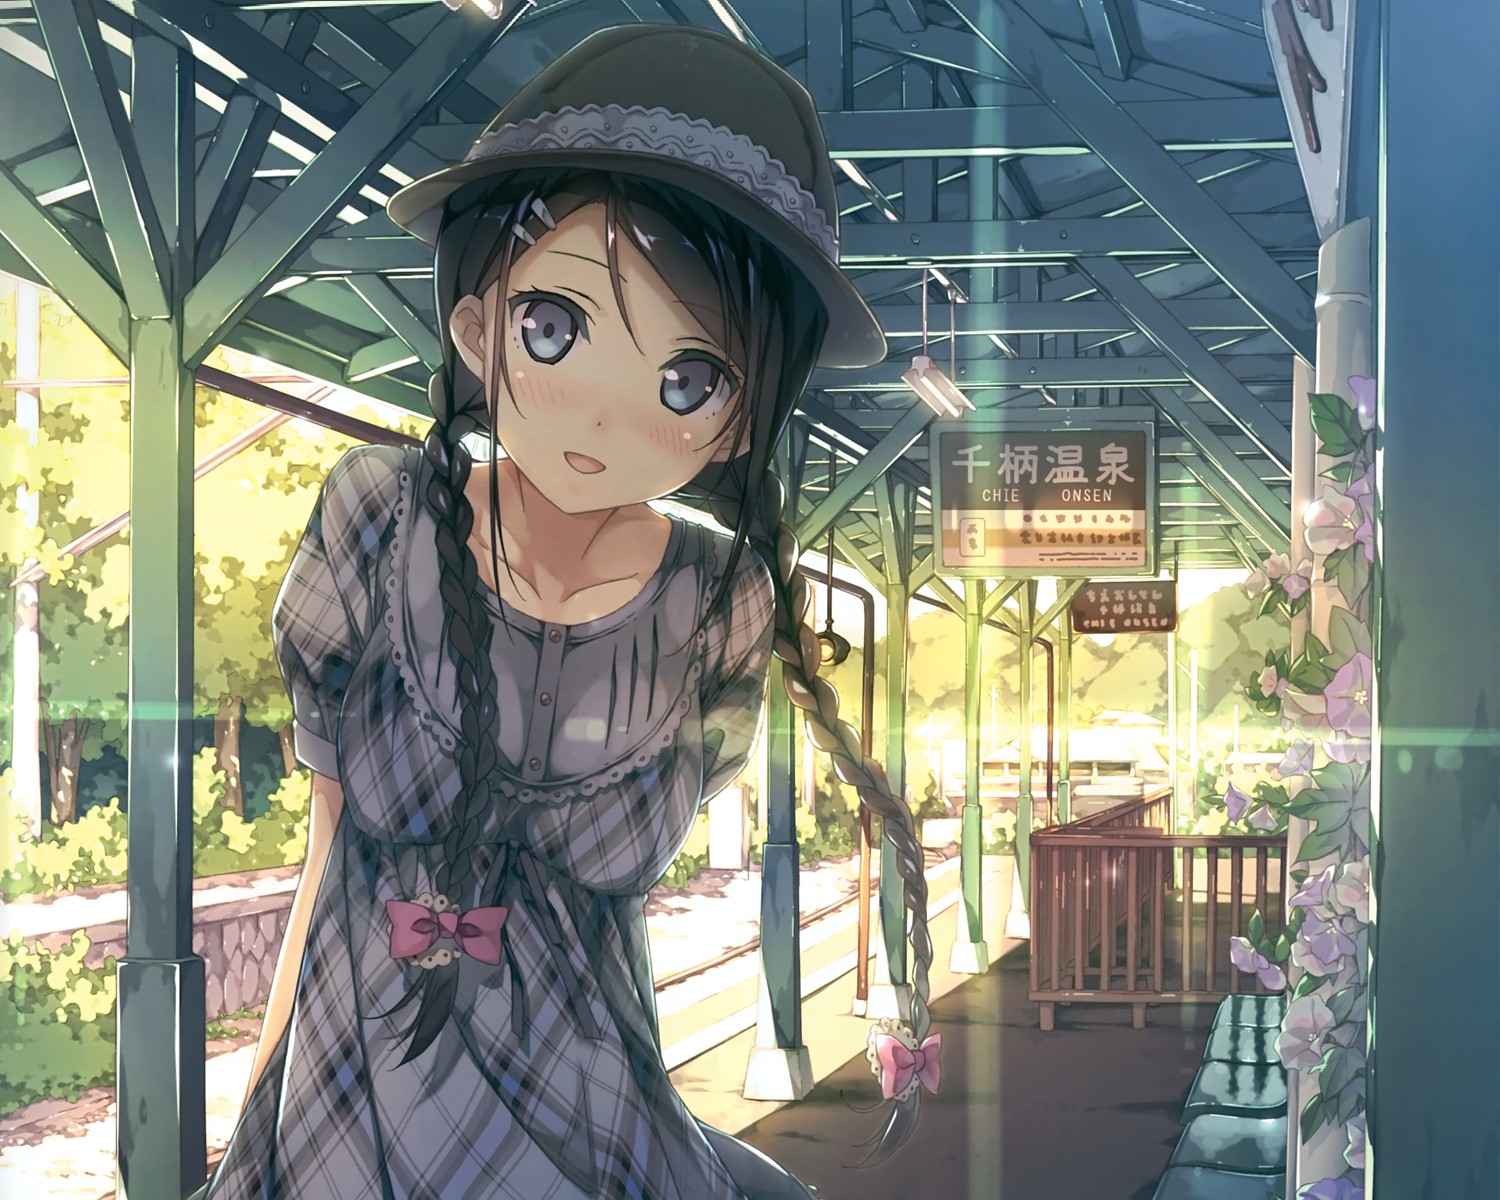 anime Girls, Train Station, Digital Art Wallpaper